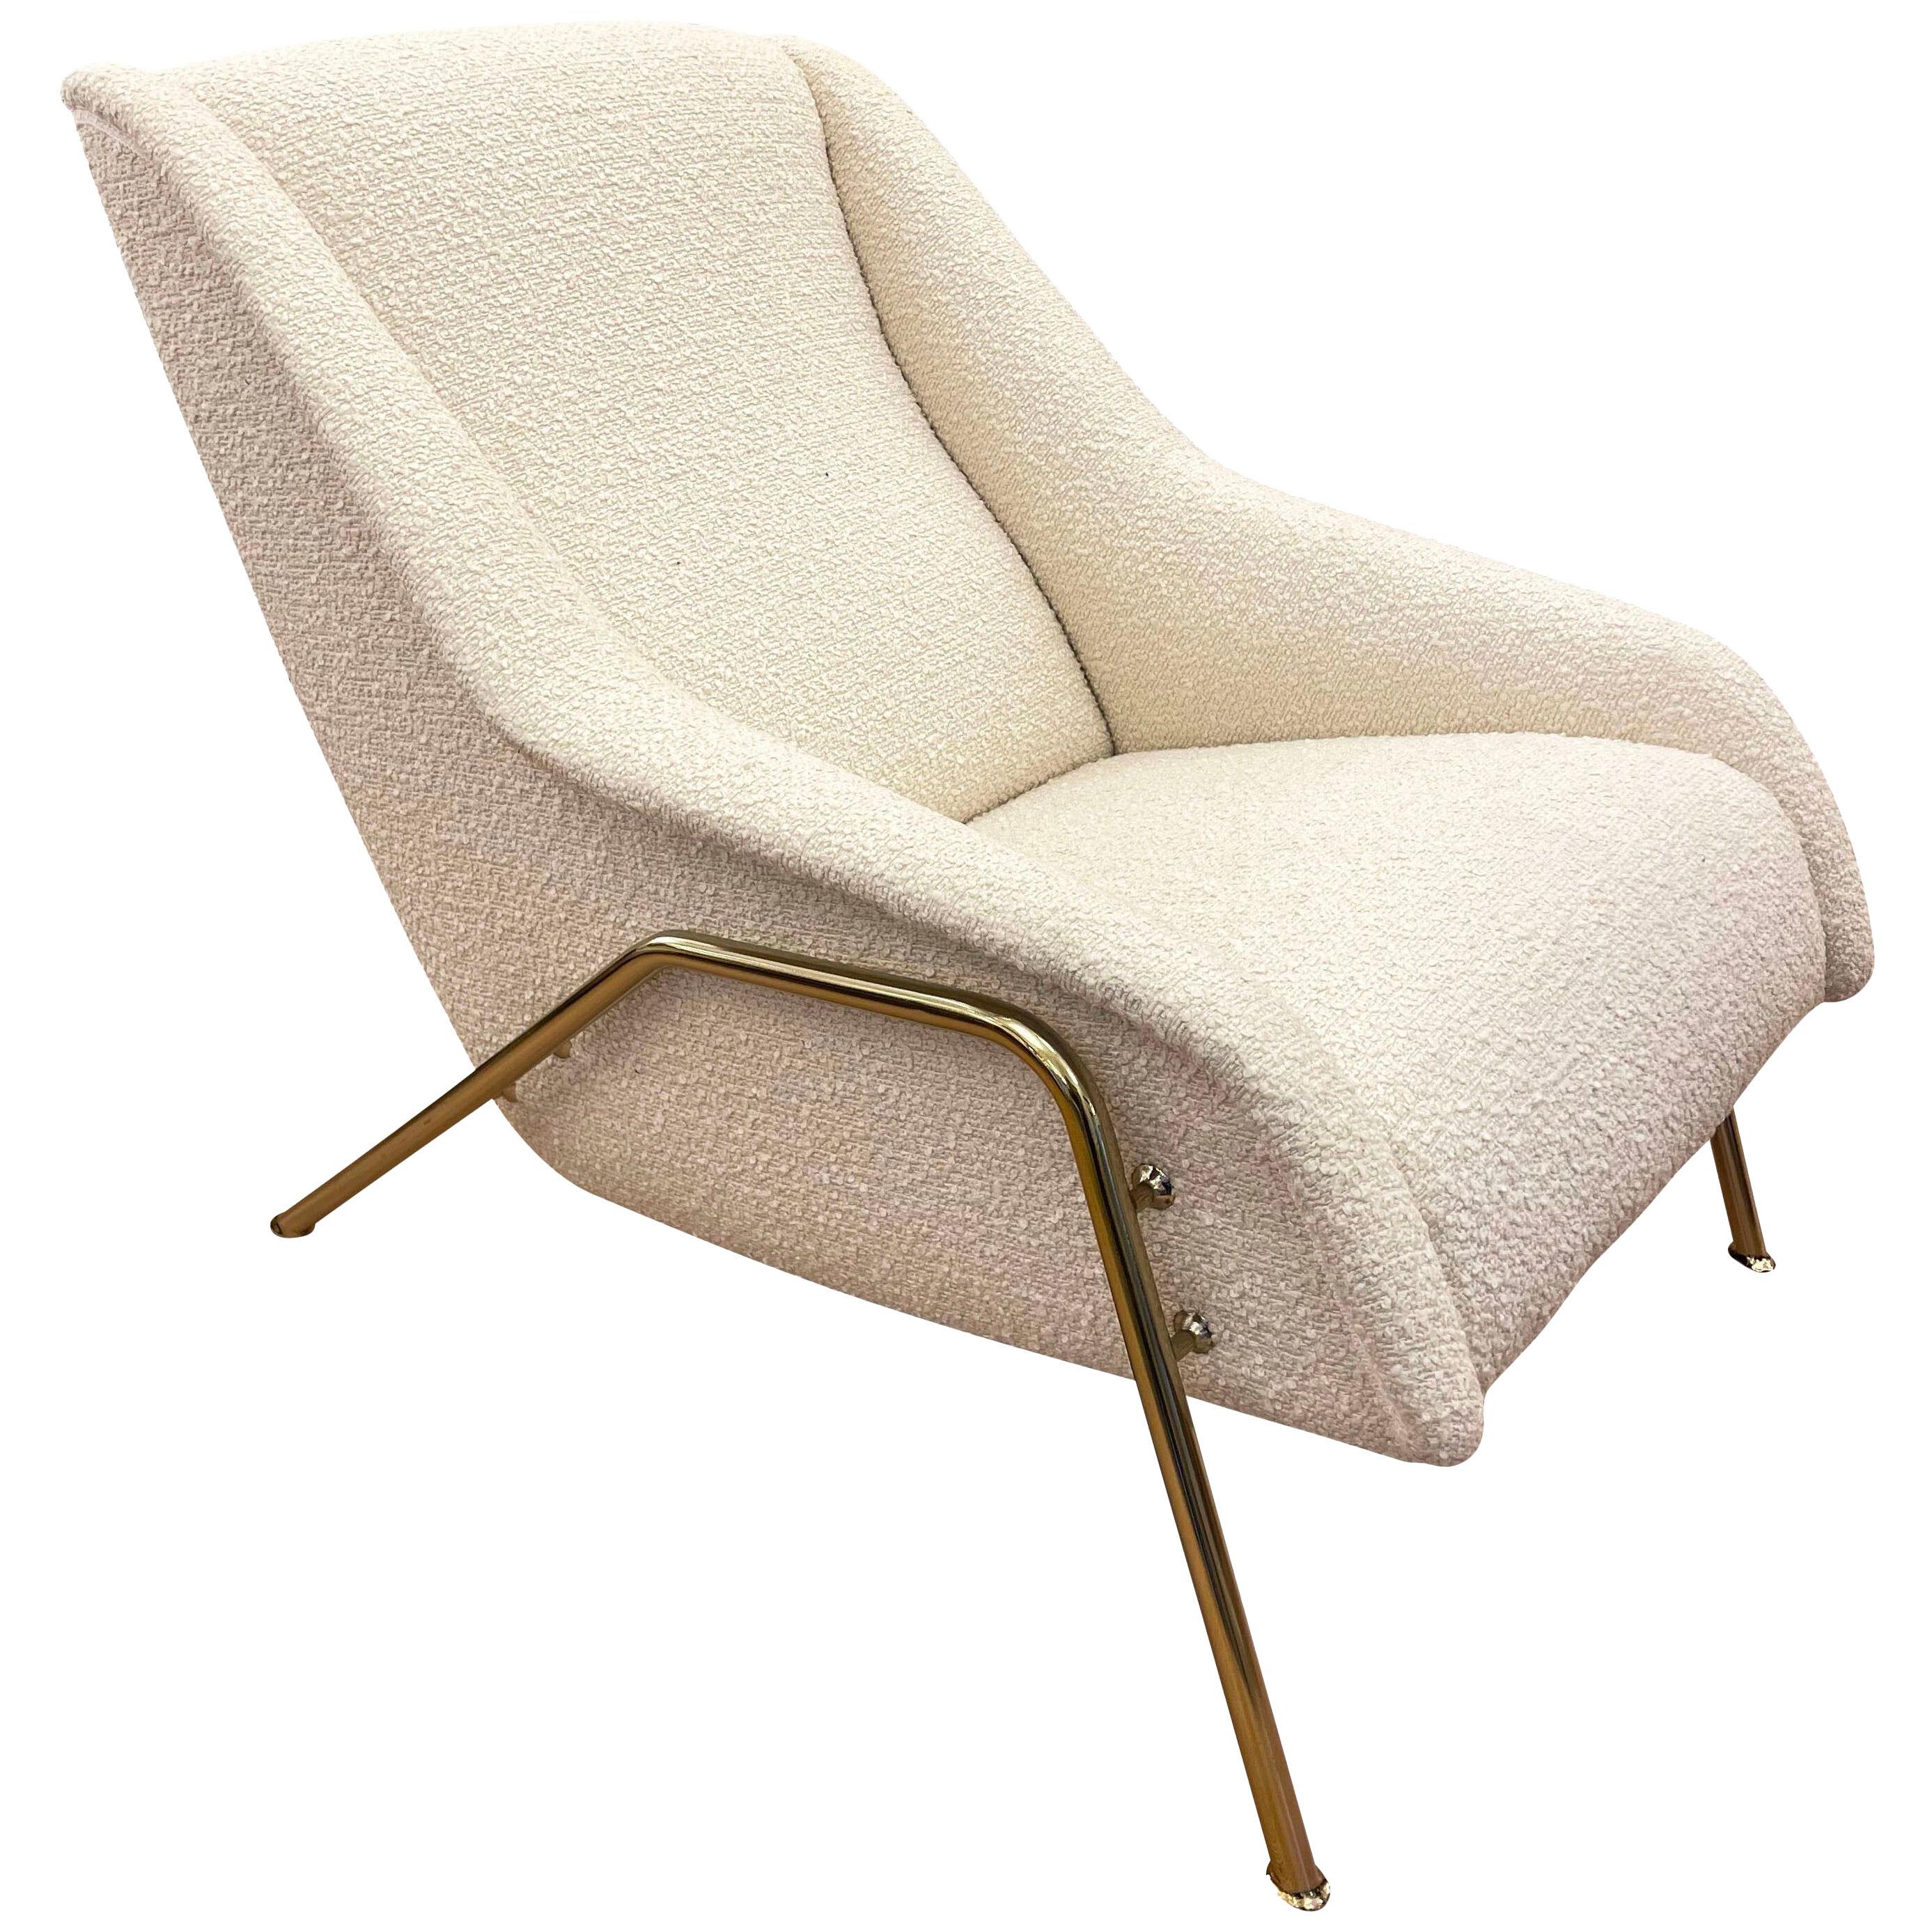 Italian Mid-Century Lounge Chair